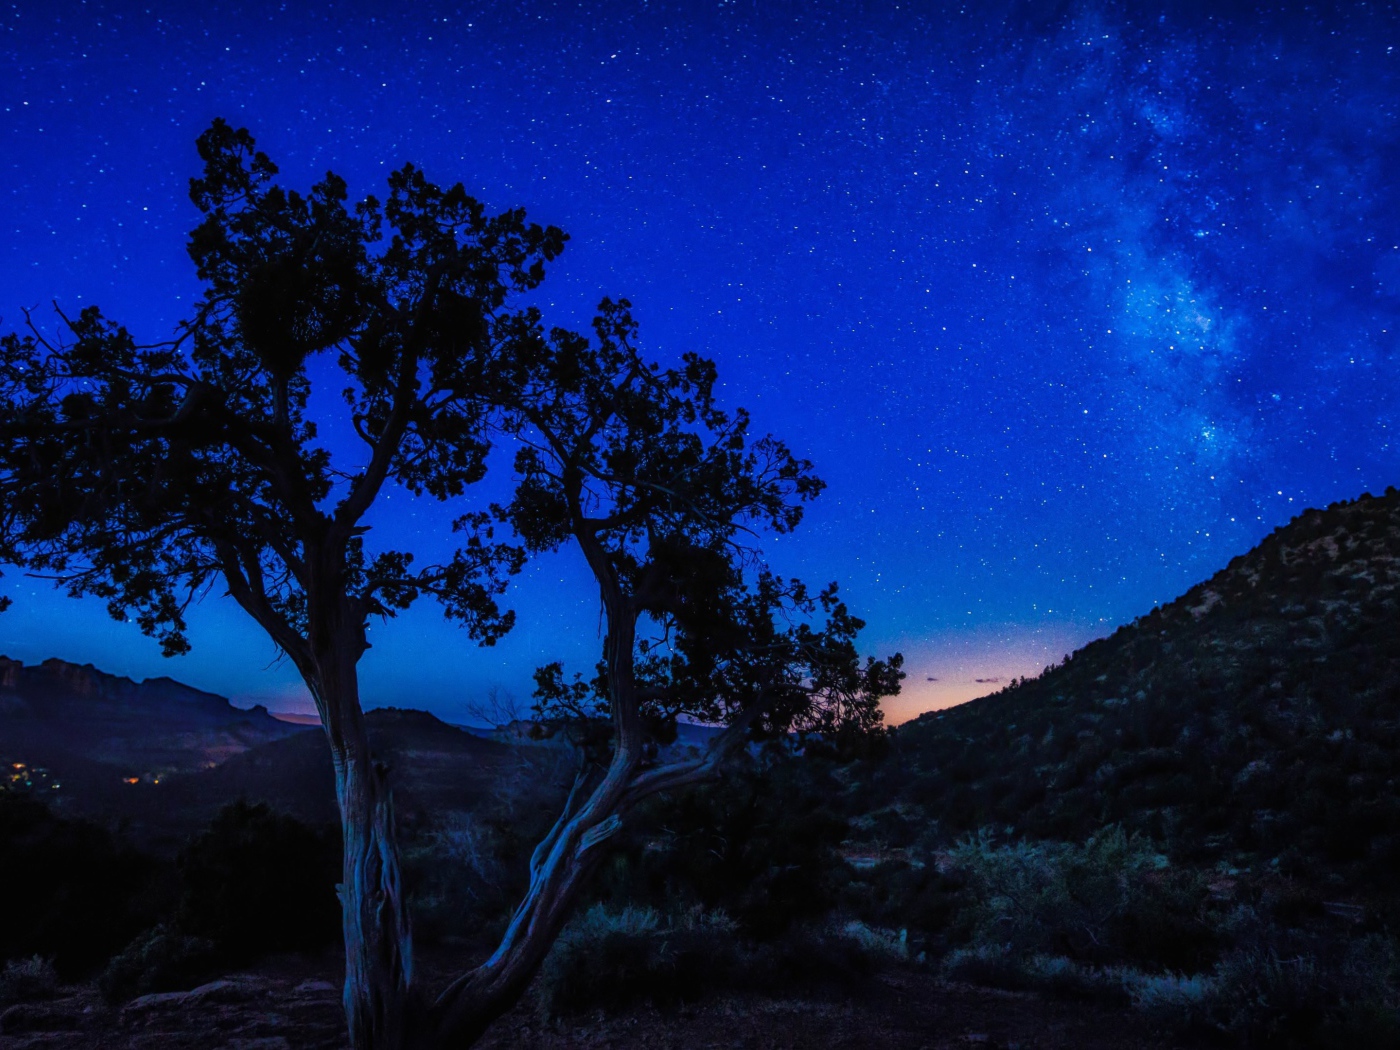 Дерево у холма под голубым звездным небом ночью 